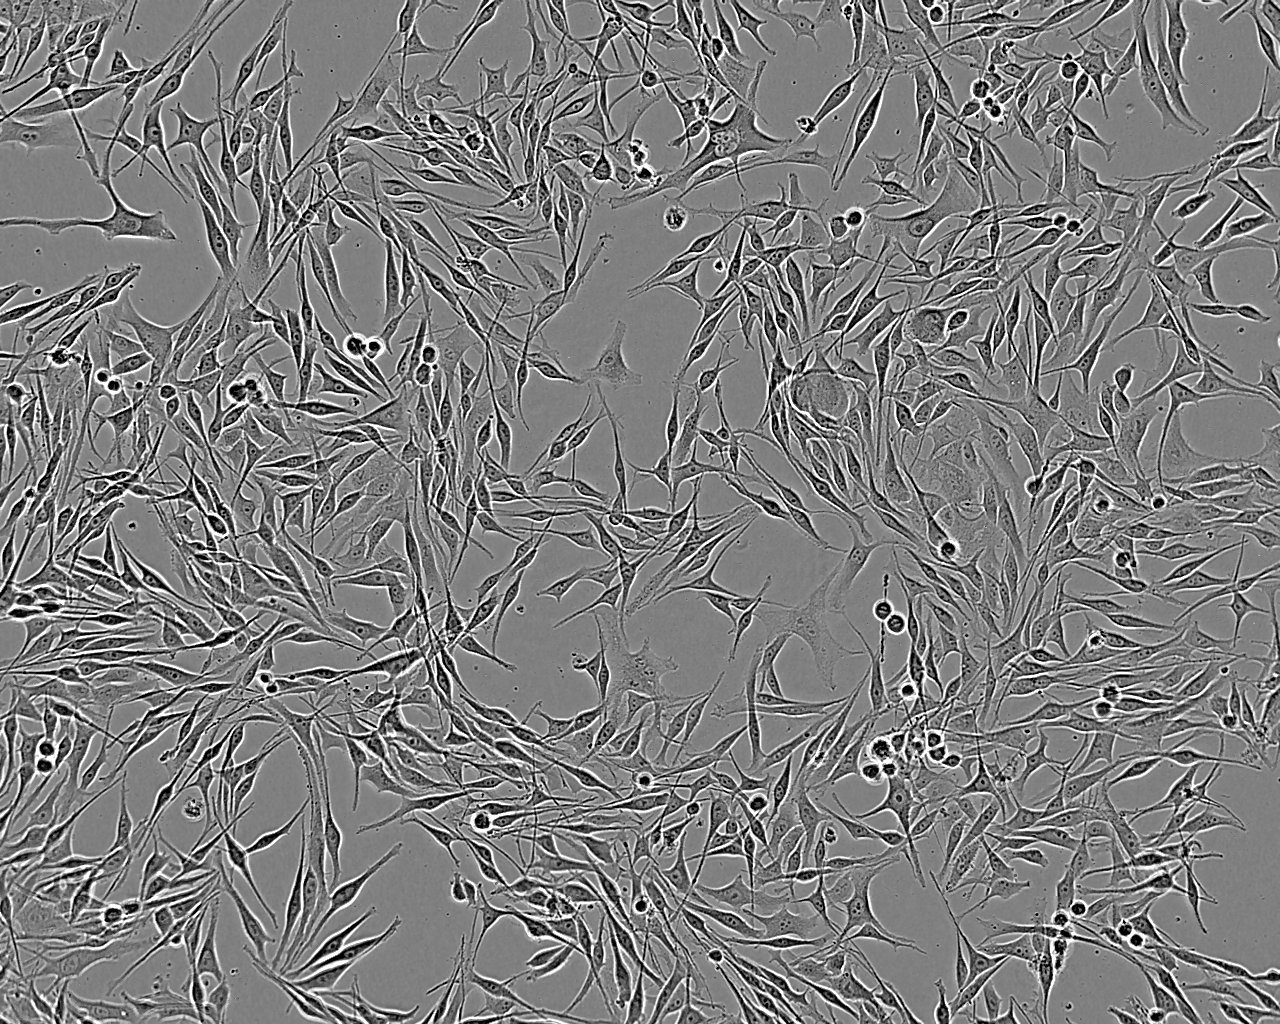 NCI-H1404 Cell:人乳头状腺癌细胞系,NCI-H1404 Cell